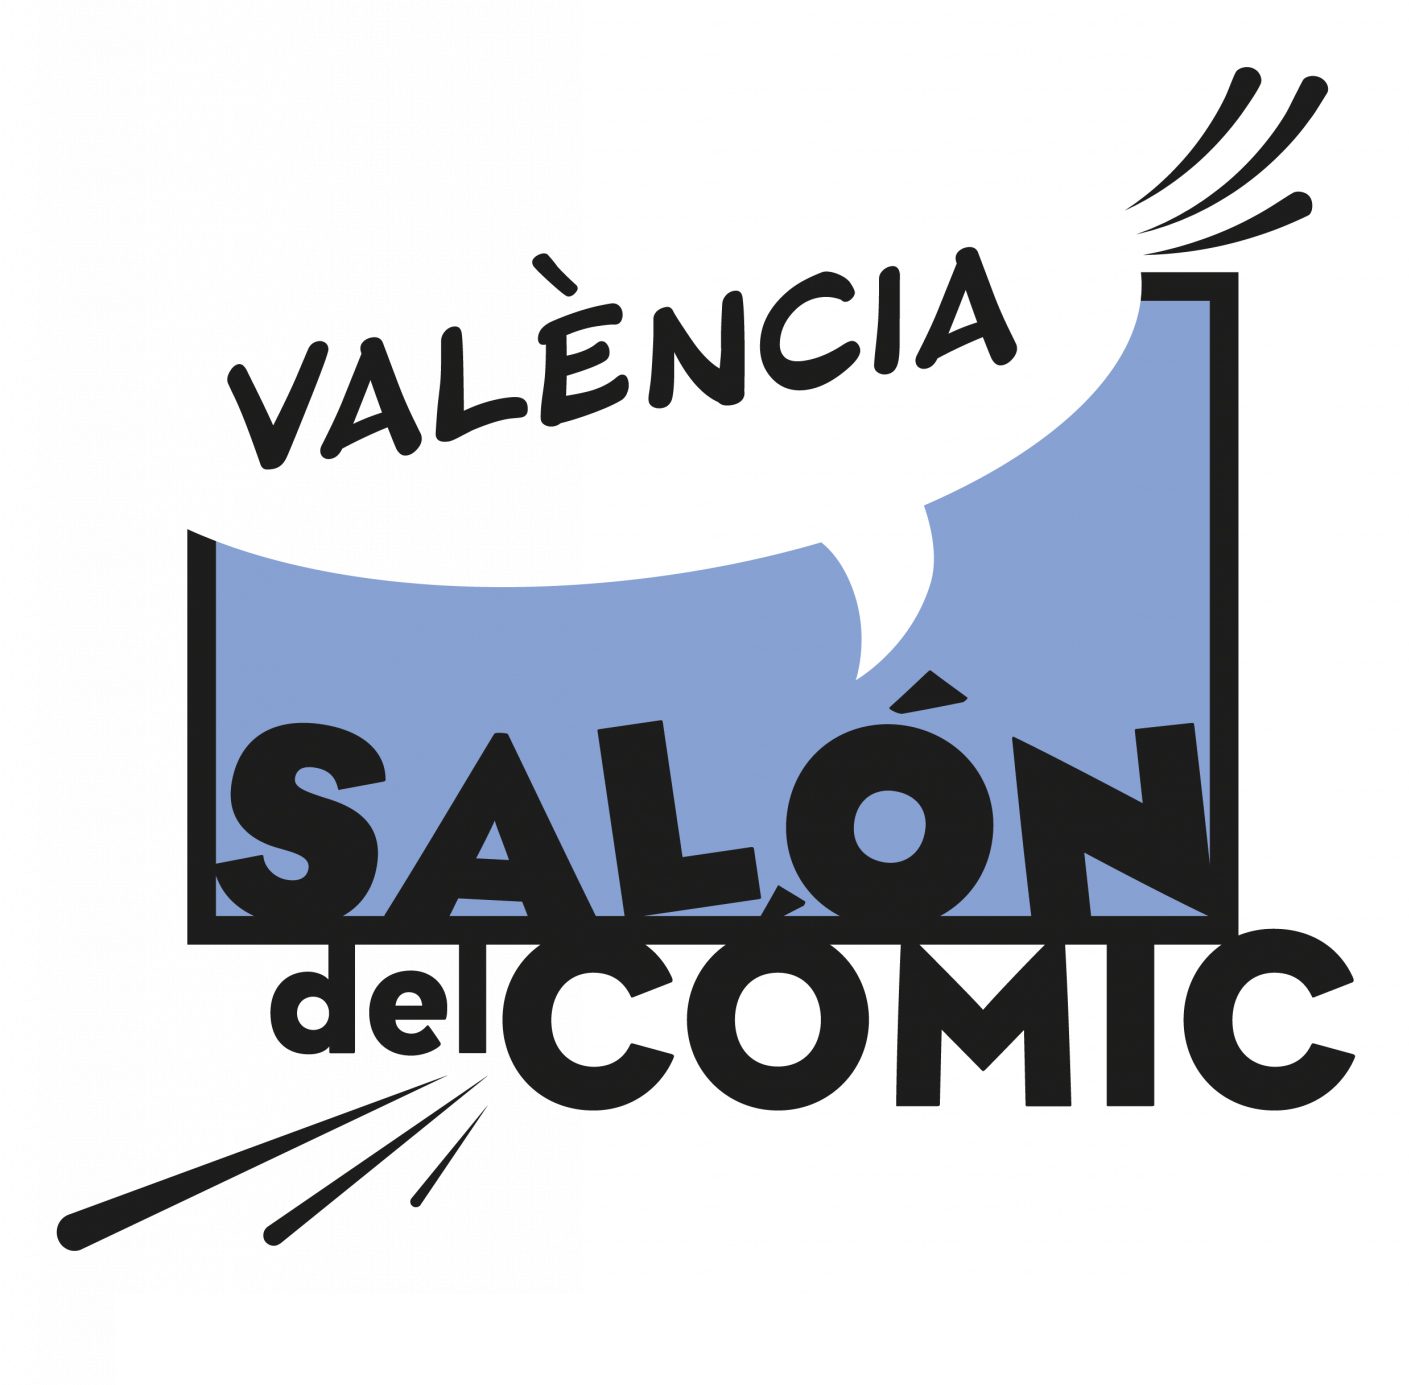 Salón Comic València